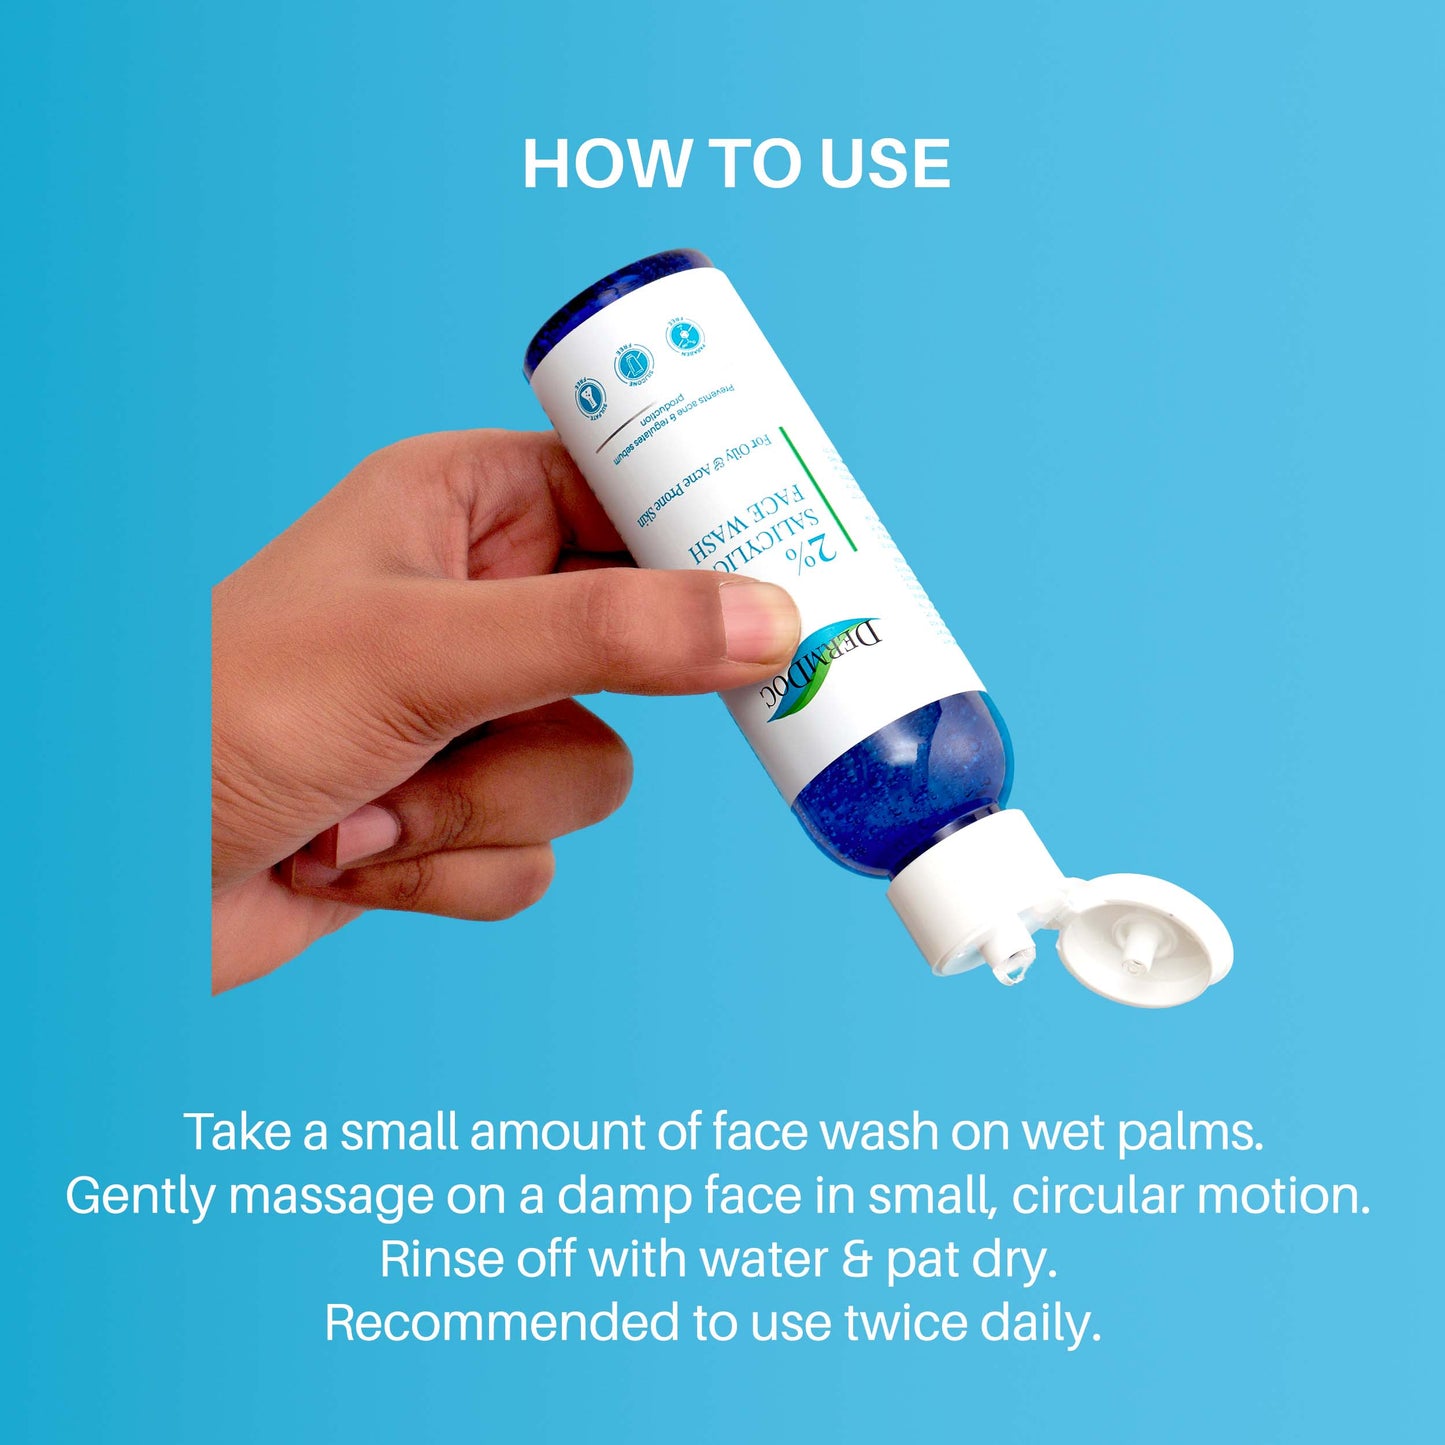 DermDoc 2% Salicylic Acid Face Wash For Acne (120 ml)